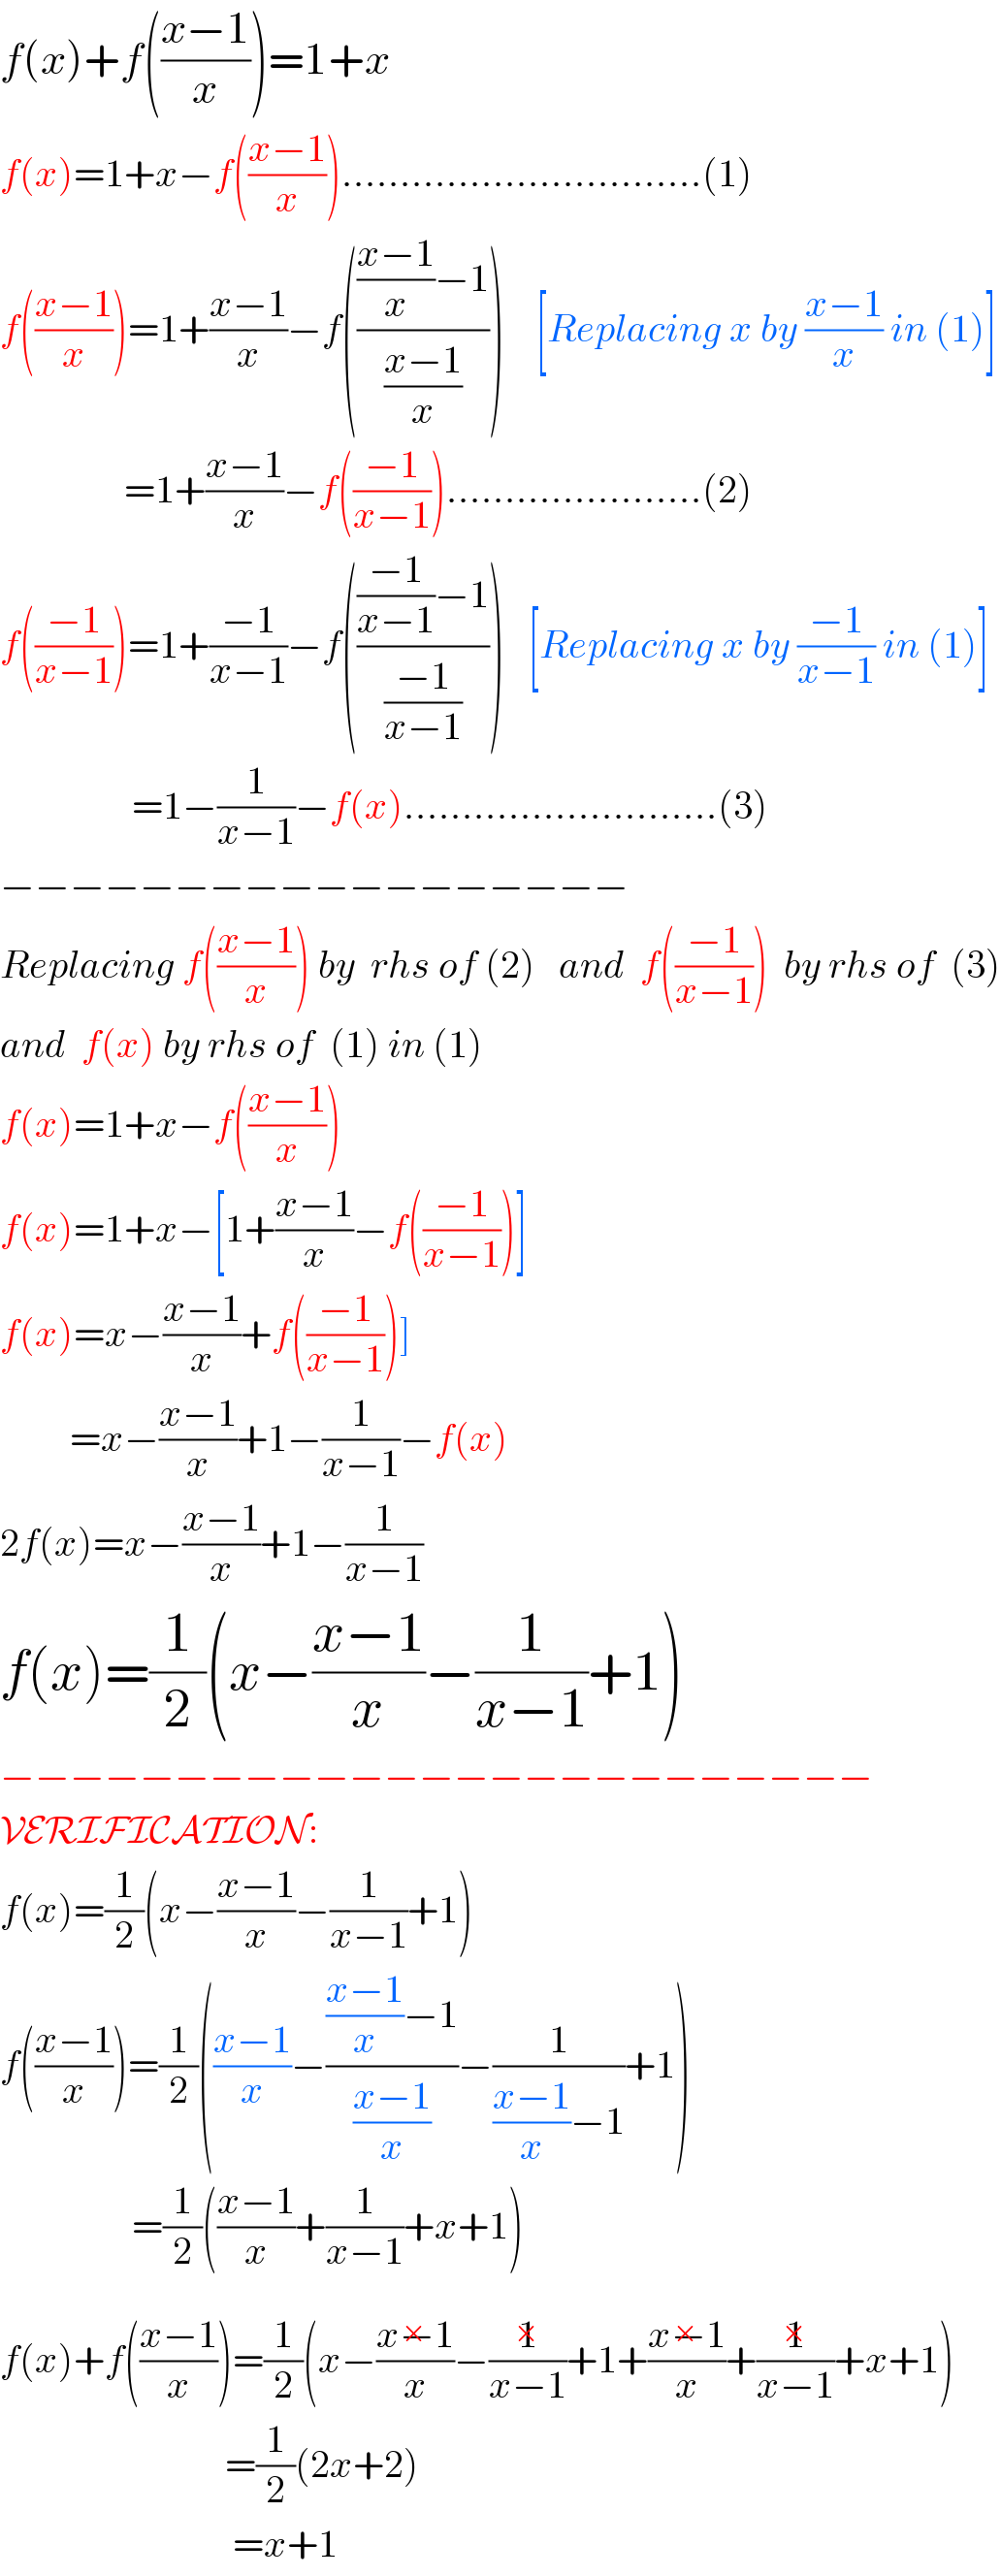 f(x)+f(((x−1)/x))=1+x  f(x)=1+x−f(((x−1)/x))...............................(1)  f(((x−1)/x))=1+((x−1)/x)−f(((((x−1)/x)−1)/((x−1)/x)))    [Replacing x by ((x−1)/x) in (1)]                  =1+((x−1)/x)−f(((−1)/(x−1)))......................(2)  f(((−1)/(x−1)))=1+((−1)/(x−1))−f(((((−1)/(x−1))−1)/((−1)/(x−1))))   [Replacing x by ((−1)/(x−1)) in (1)]                   =1−(1/(x−1))−f(x)...........................(3)  −−−−−−−−−−−−−−−−−−  Replacing f(((x−1)/x)) by  rhs of (2)   and  f(((−1)/(x−1)))  by rhs of  (3)  and  f(x) by rhs of  (1) in (1)  f(x)=1+x−f(((x−1)/x))  f(x)=1+x−[1+((x−1)/x)−f(((−1)/(x−1)))]  f(x)=x−((x−1)/x)+f(((−1)/(x−1)))]           =x−((x−1)/x)+1−(1/(x−1))−f(x)  2f(x)=x−((x−1)/x)+1−(1/(x−1))  f(x)=(1/2)(x−((x−1)/x)−(1/(x−1))+1)  −−−−−−−−−−−−−−−−−−−−−−−−−  VERIFICATION:  f(x)=(1/2)(x−((x−1)/x)−(1/(x−1))+1)  f(((x−1)/x))=(1/2)(((x−1)/x)−((((x−1)/x)−1)/((x−1)/x))−(1/(((x−1)/x)−1))+1)                   =(1/2)(((x−1)/x)+(1/(x−1))+x+1)  f(x)+f(((x−1)/x))=(1/2)(x−((x−1)/x)^(×) −(1/(x−1))^(×) +1+((x−1)/x)^(×) +(1/(x−1))^(×) +x+1)                               =(1/2)(2x+2)                                =x+1  